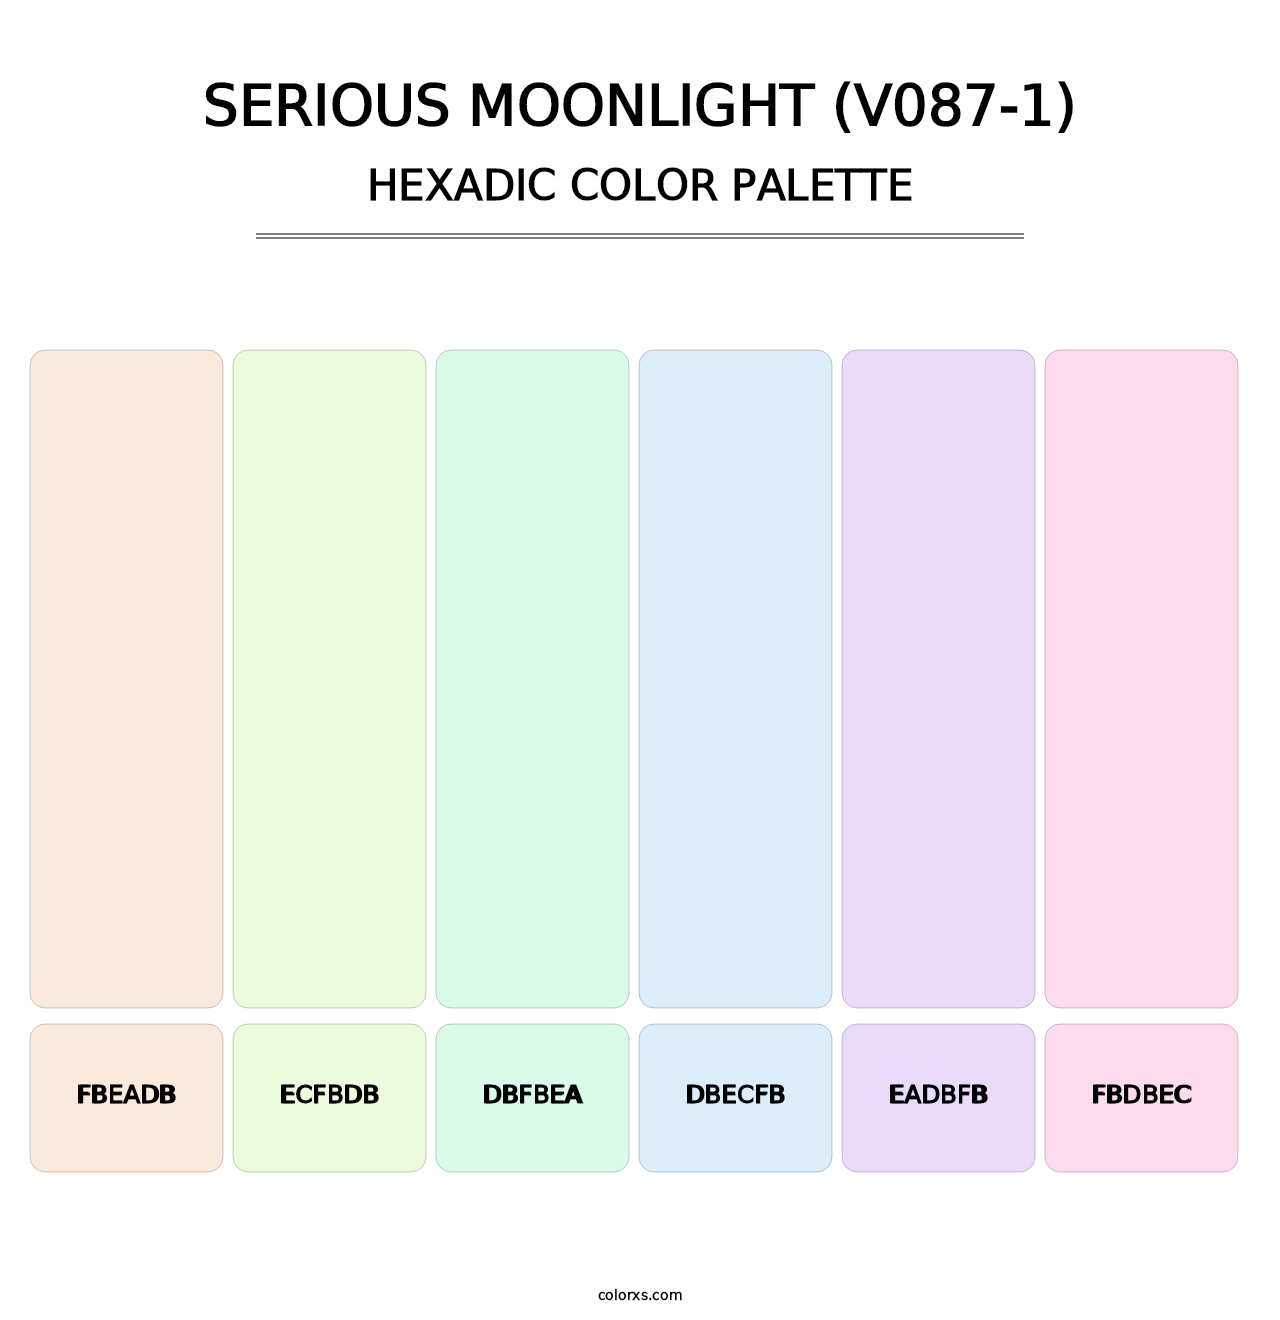 Serious Moonlight (V087-1) - Hexadic Color Palette